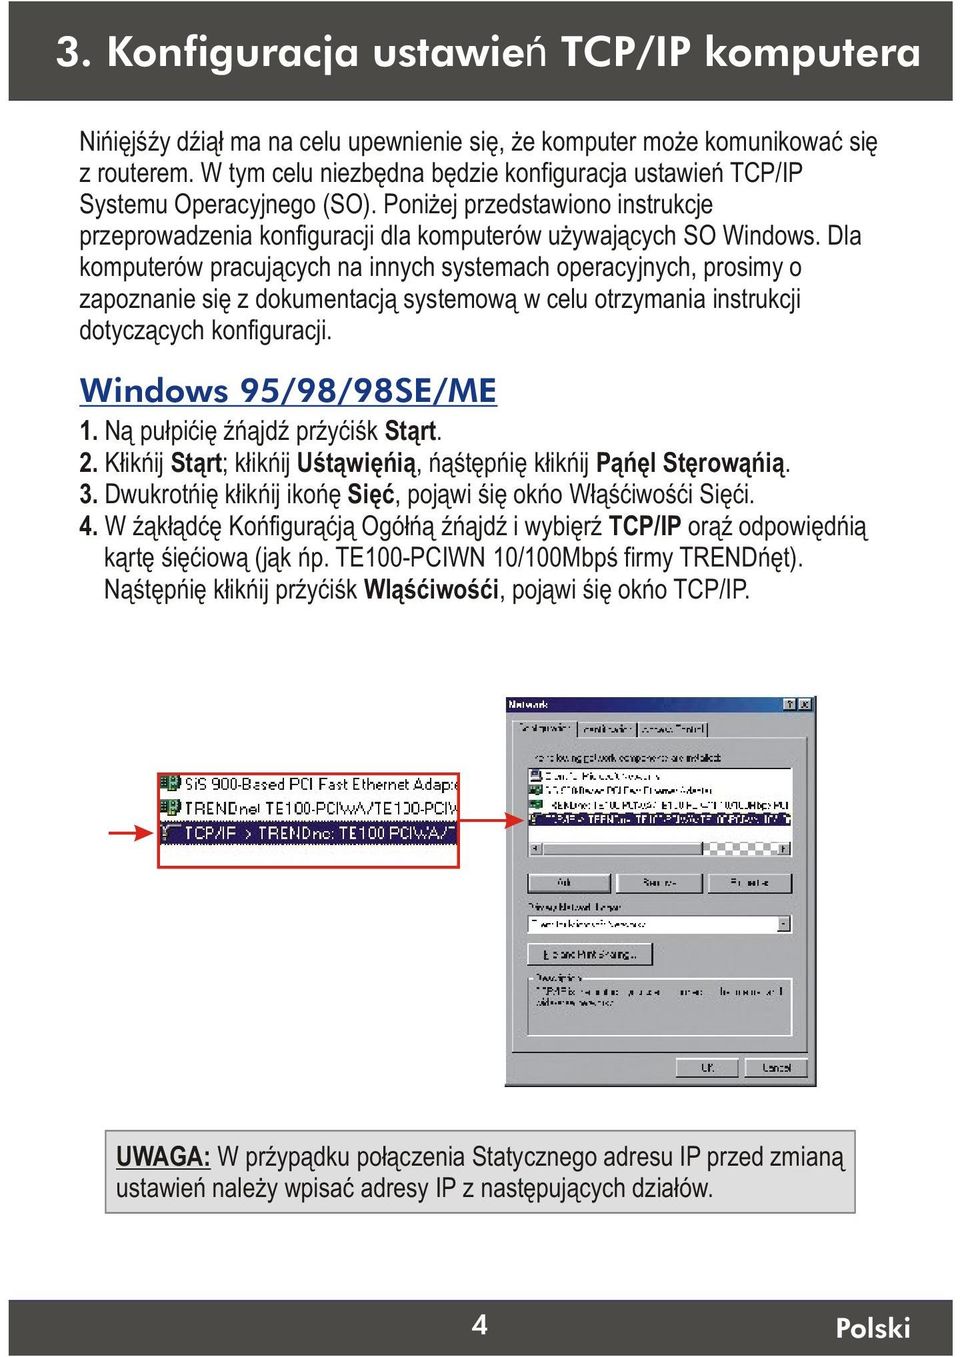 Dla komputerów pracujàcych na innych systemach operacyjnych, prosimy o zapoznanie siæ z dokumentacjà systemowà w celu otrzymania instrukcji dotyczàcych konfiguracji. Windows 95/98/98SE/ME 1.